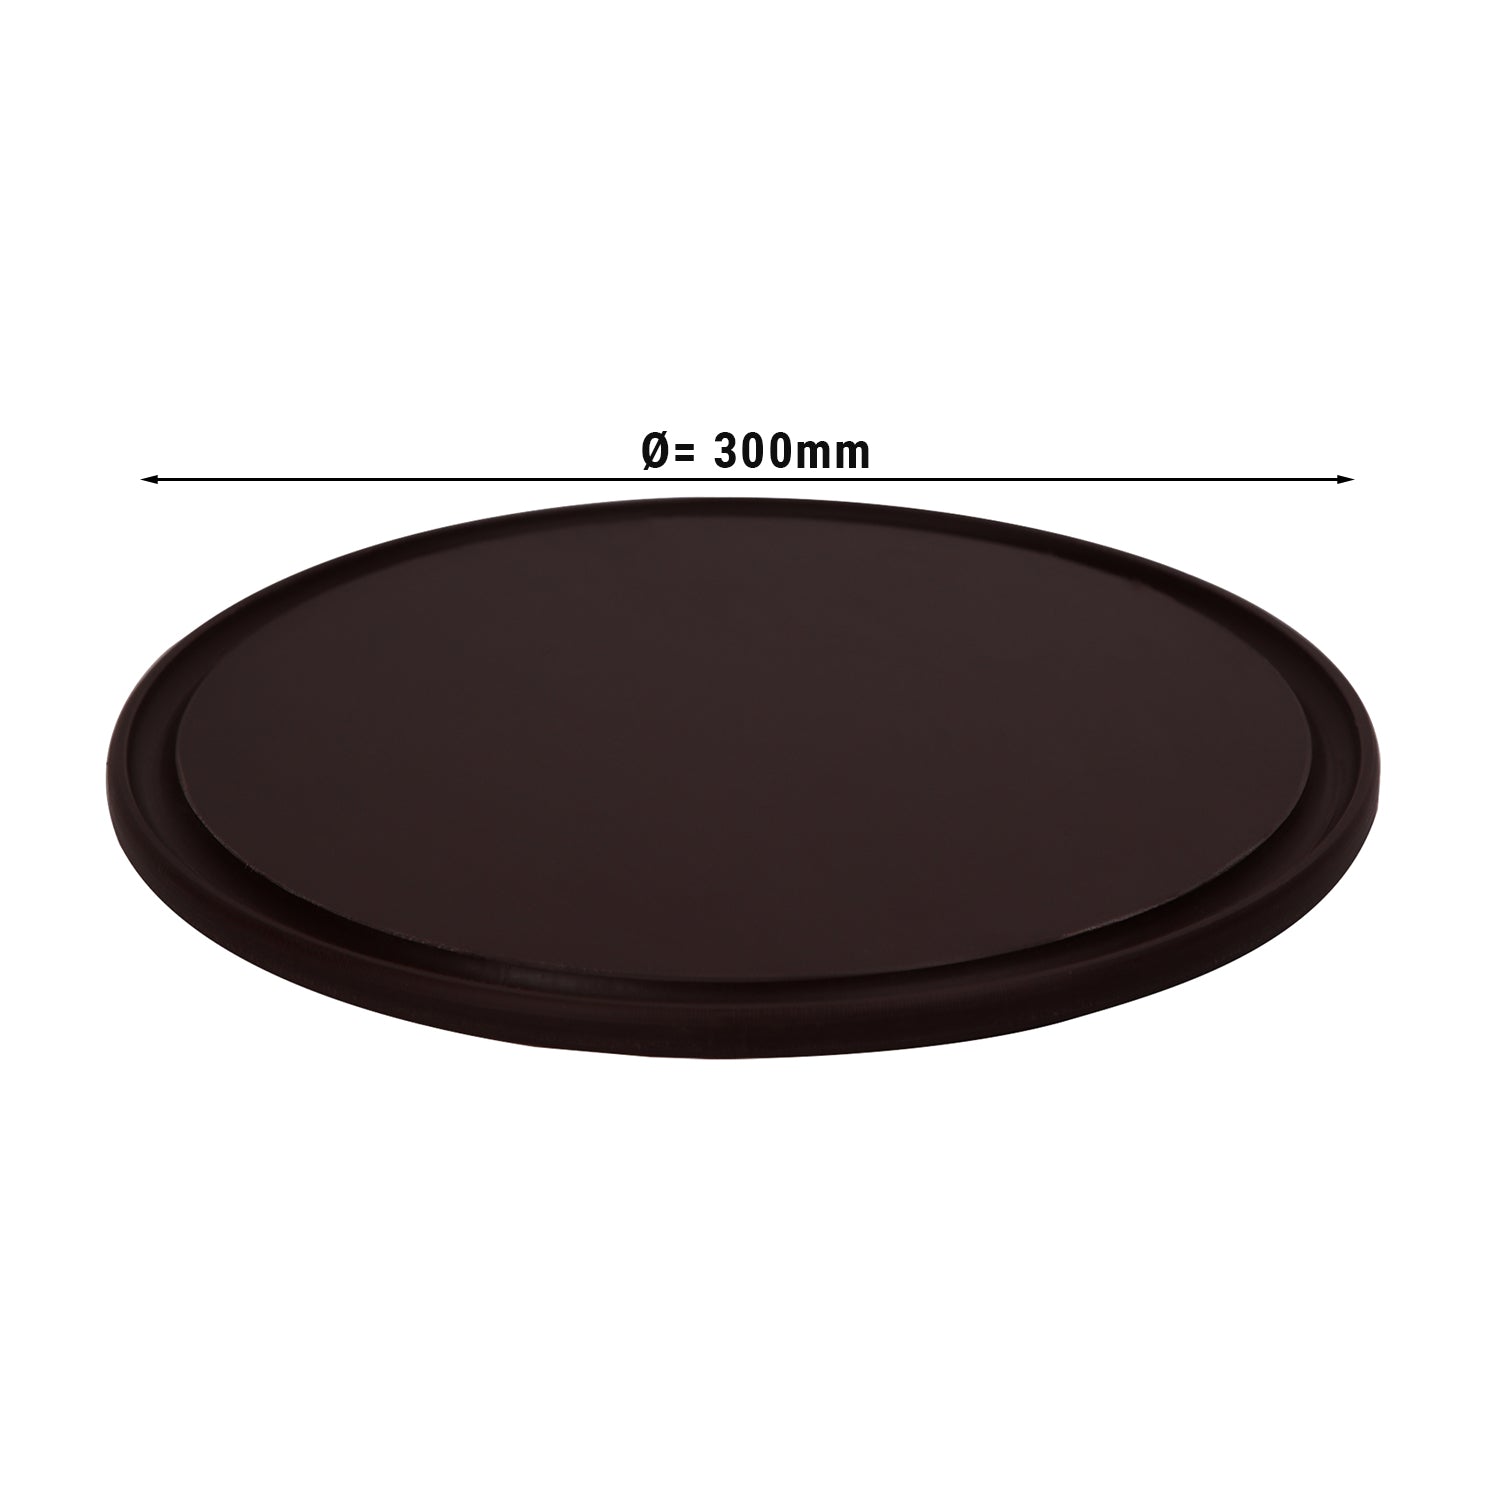 Pizzabakke - 30 cm i diameter